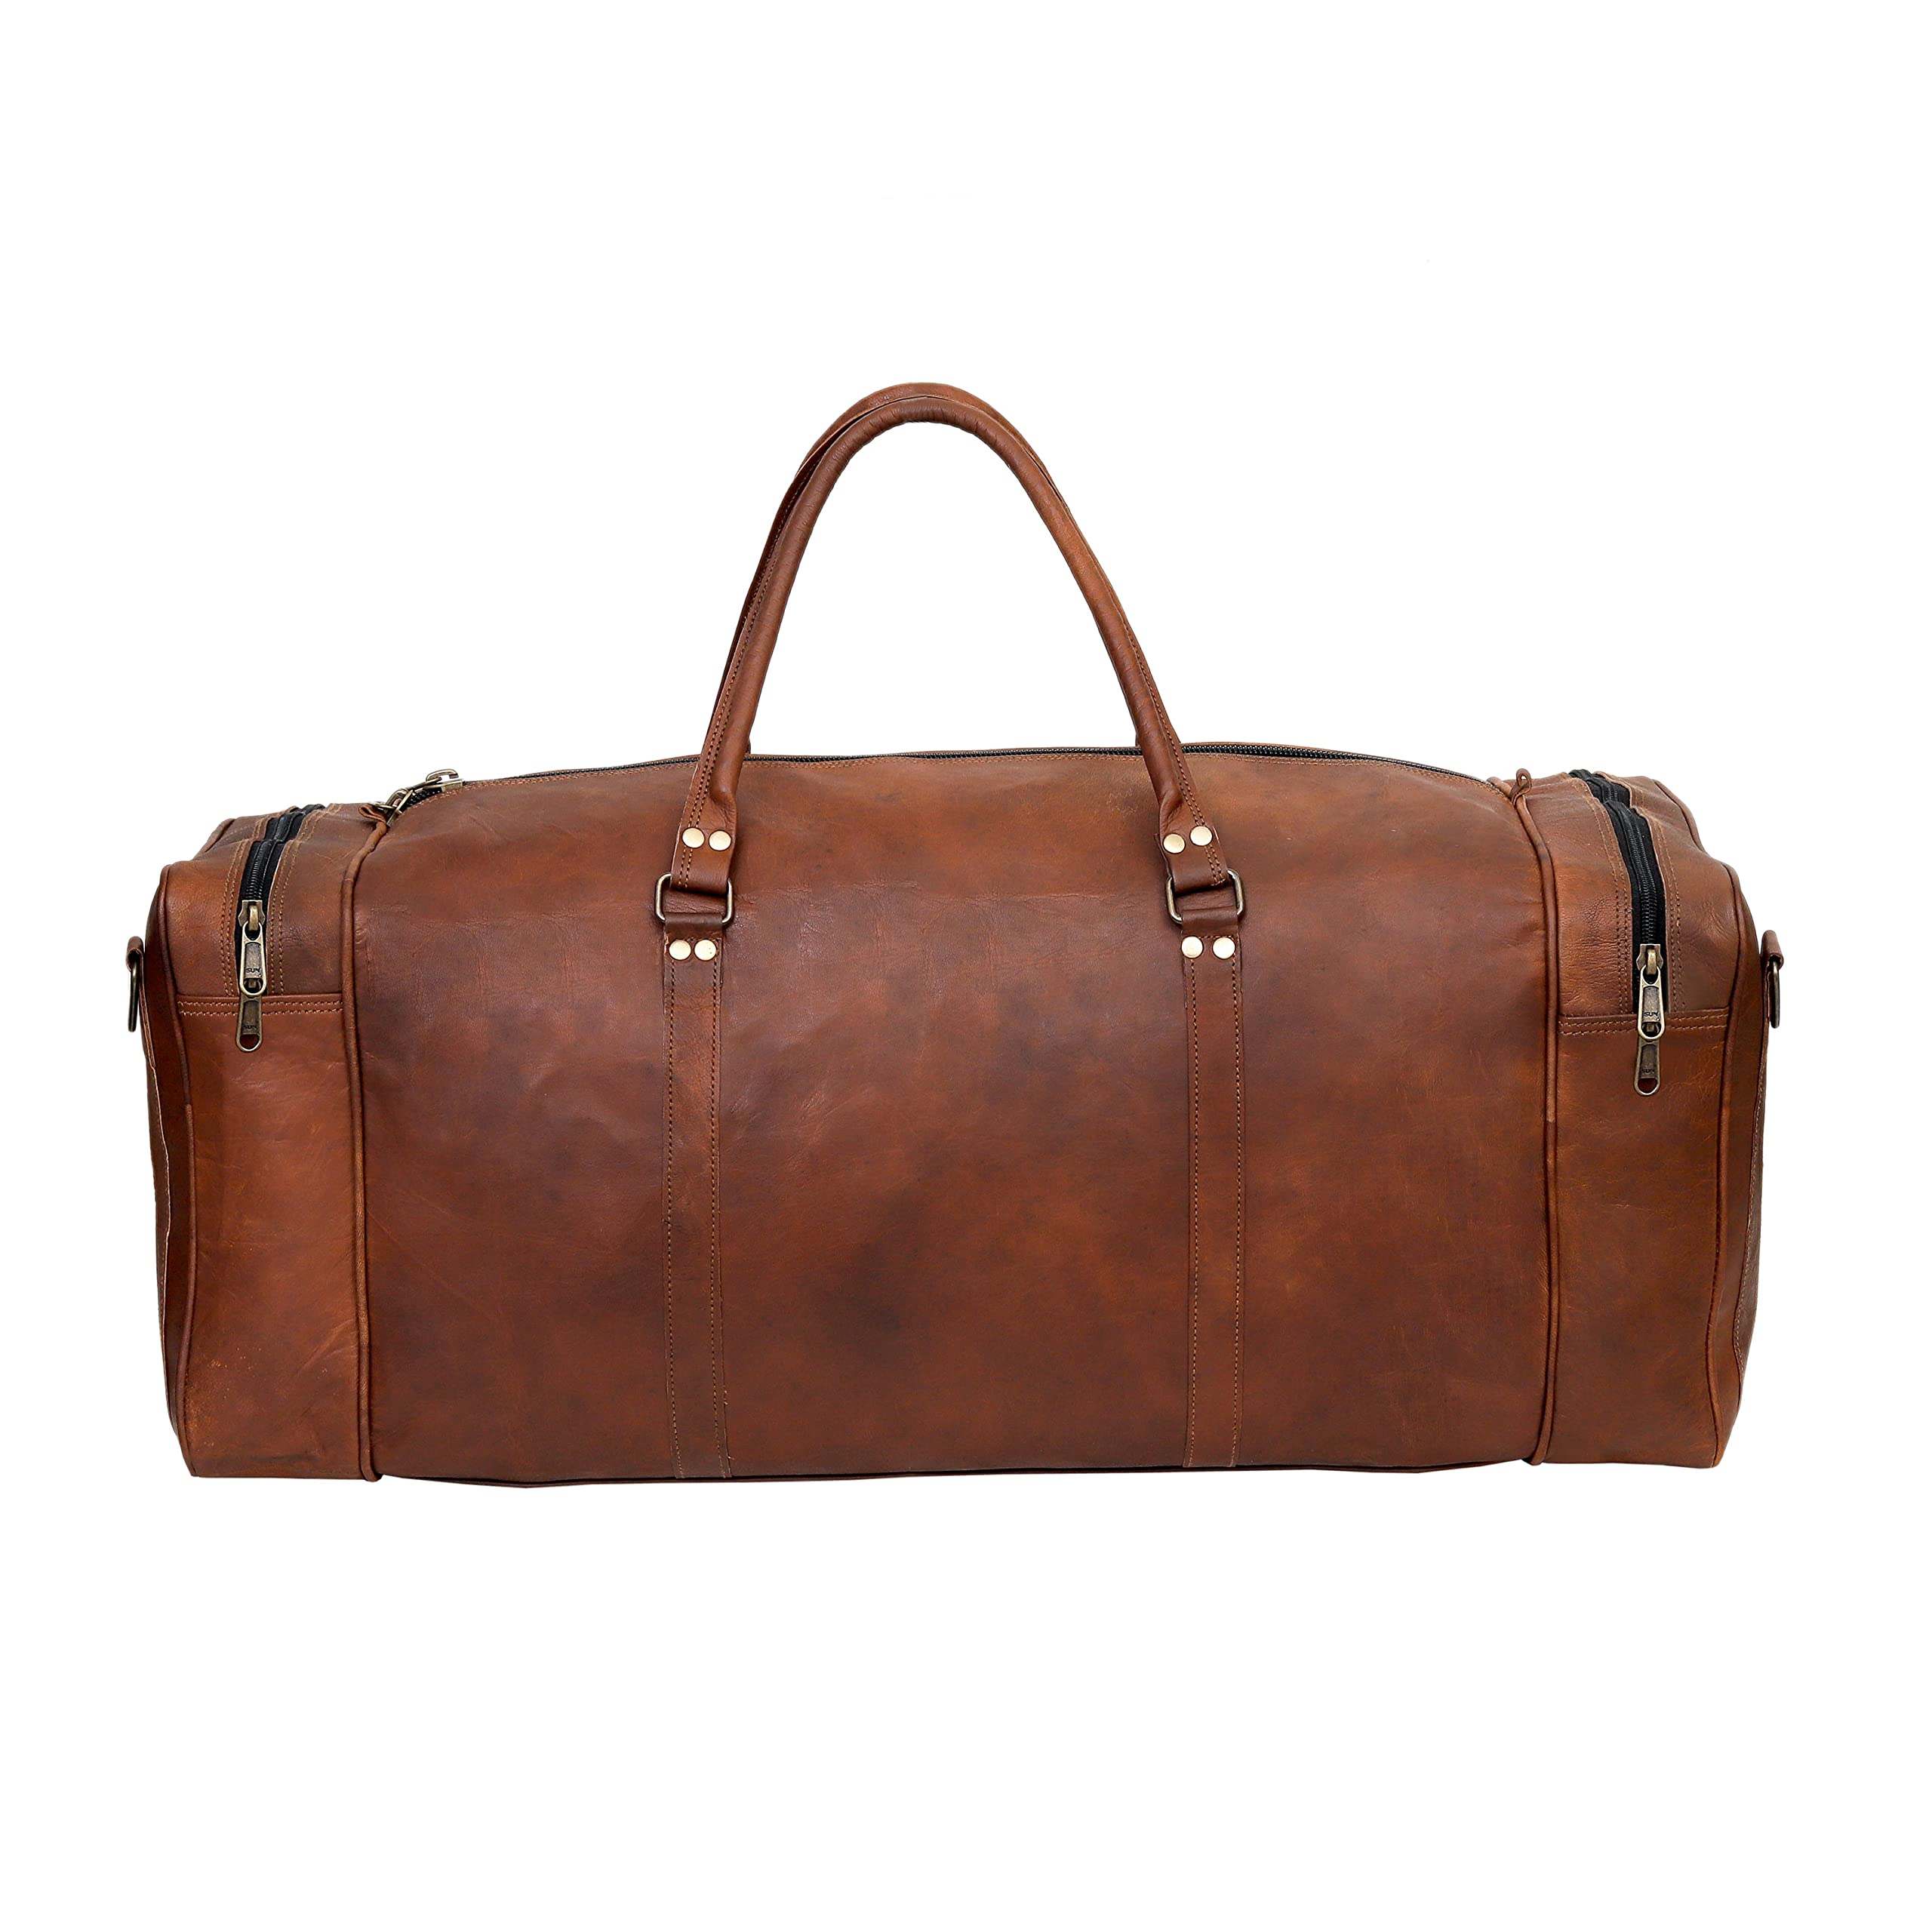 Original Leather 24 inch Unisex Travel Duffel Bag | chuffeddeal